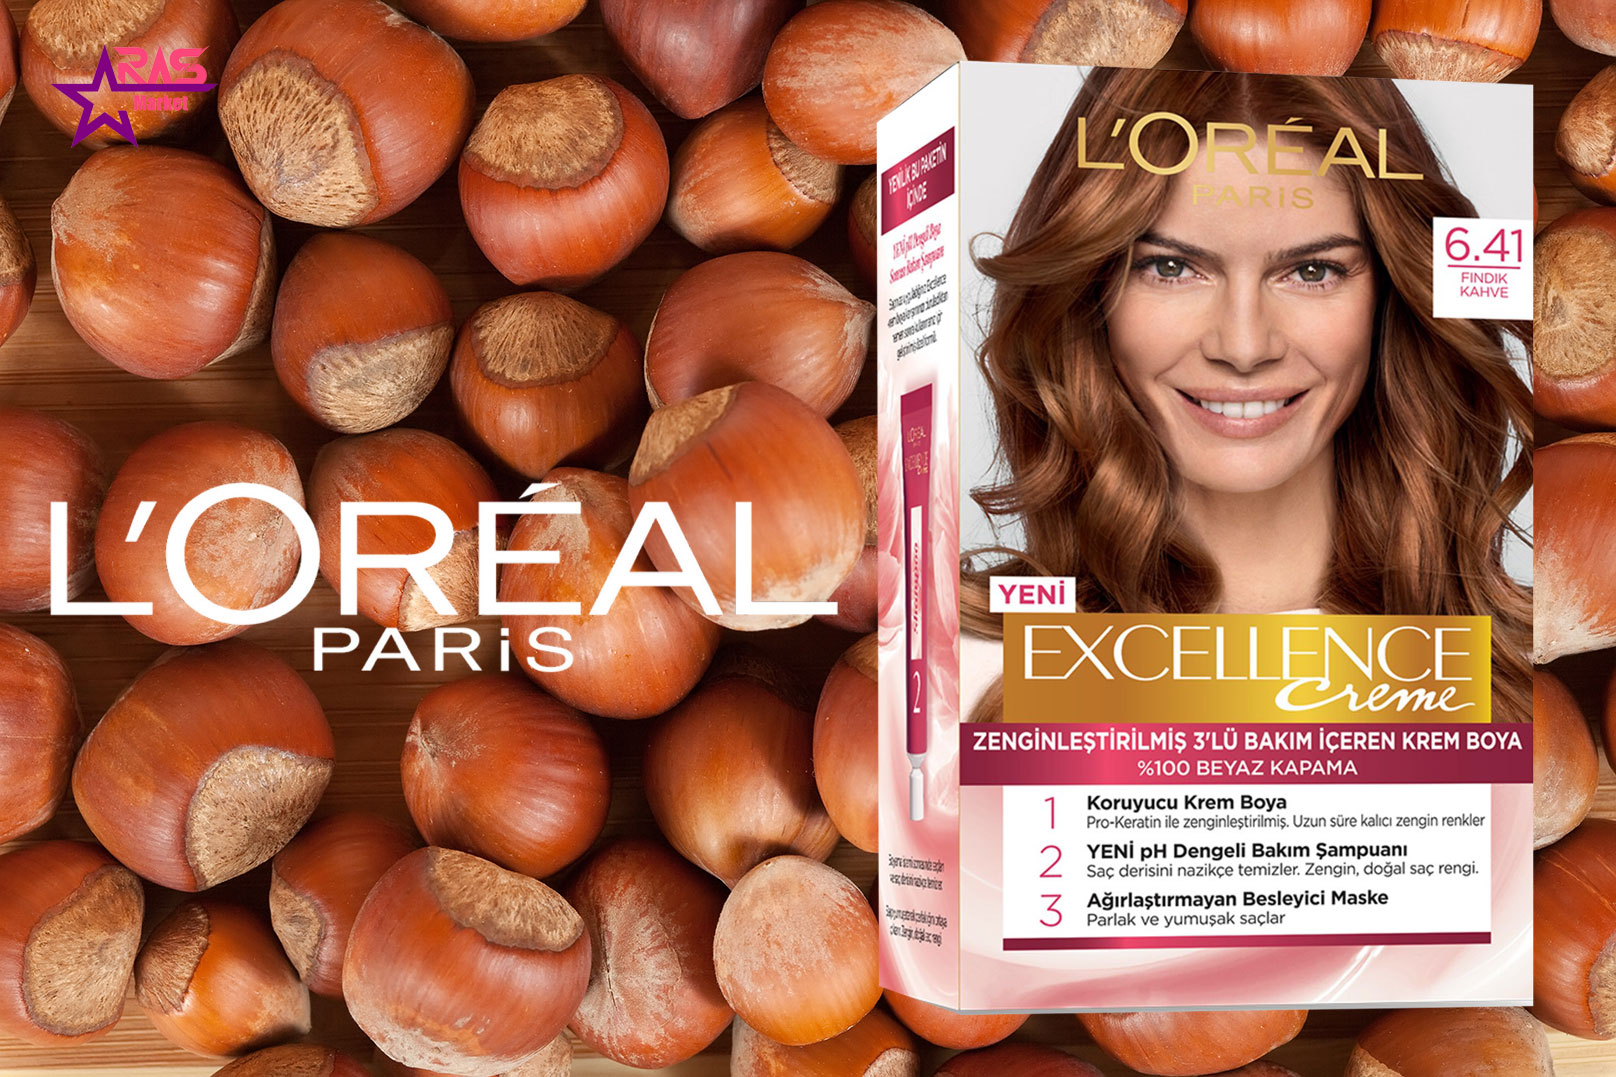 کیت رنگ مو لورآل سری Excellence شماره 6.41 ، خرید اینترنتی محصولات شوینده و بهداشتی ، بهداشت بانوان